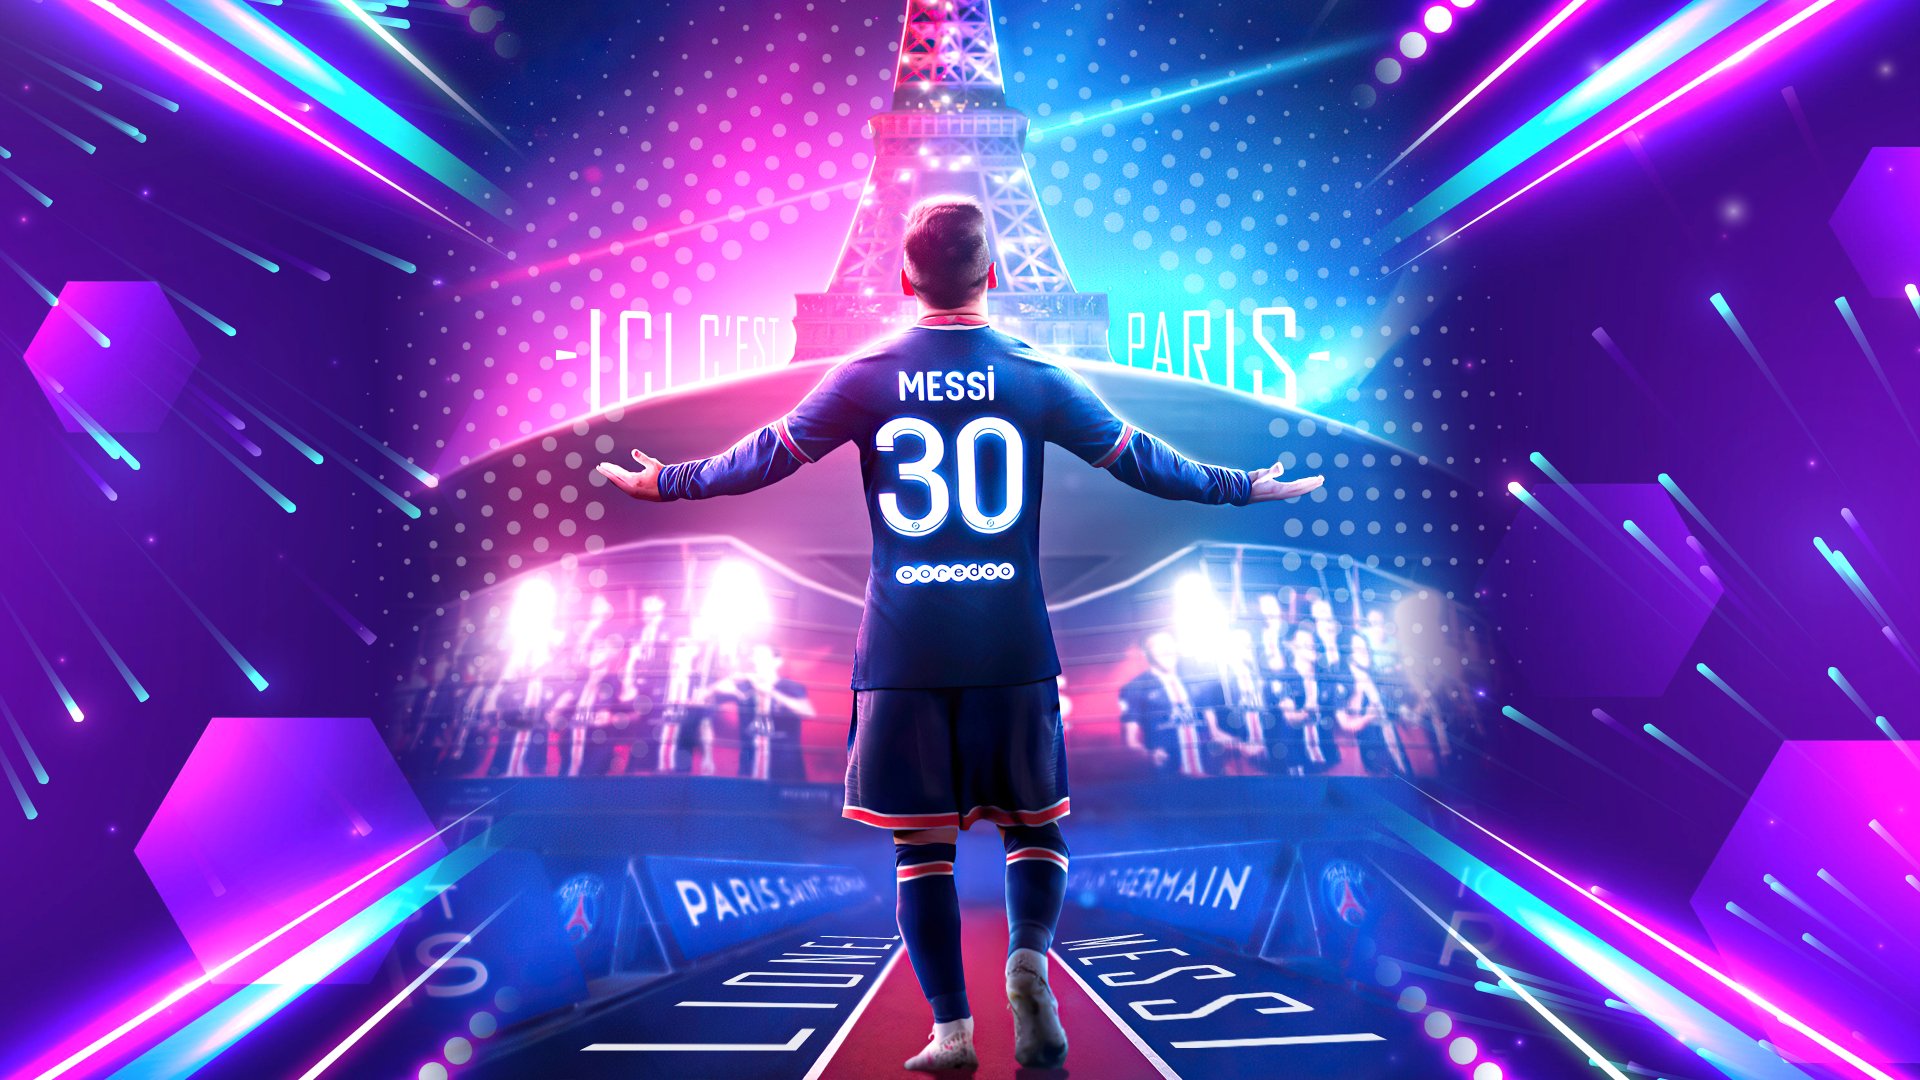 Hãy tải nền tảng Paris Saint-Germain F.C. Wallpapers để thể hiện tình yêu của bạn với đội bóng đá đình đám này. Tươi tắn, trẻ trung và đầy năng lượng, hình nền PSG sẽ giúp bạn thêm động lực trong công việc cũng như cho những buổi tối thư giãn.